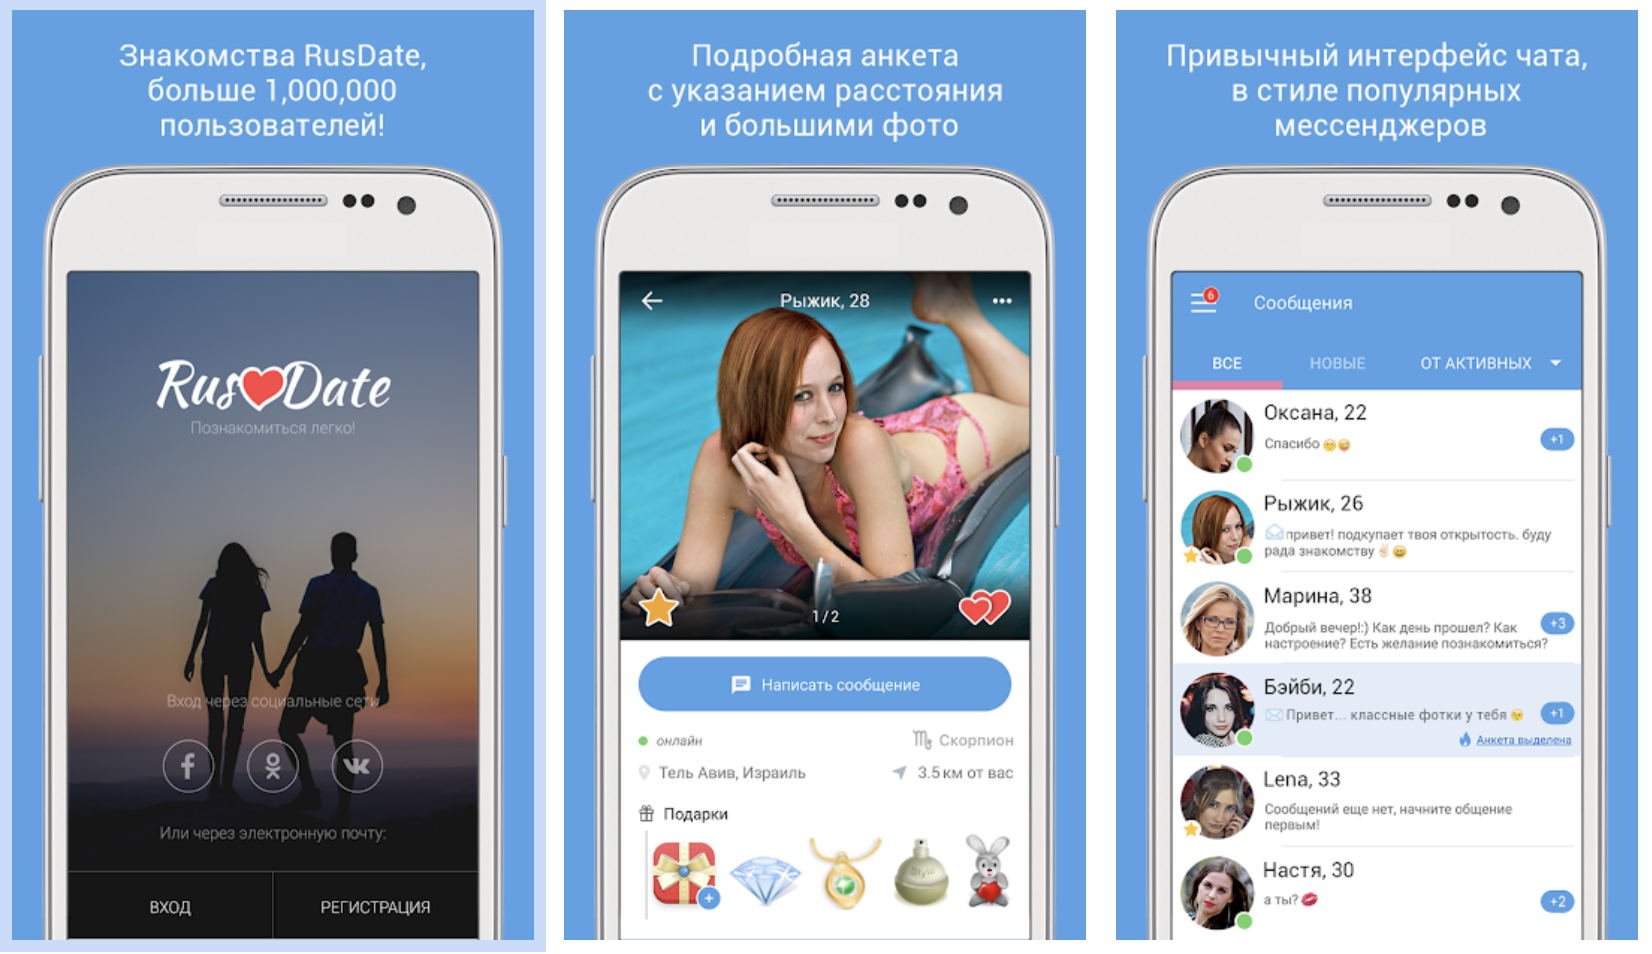 RusDate - приложение для знакомств с широким функционалом